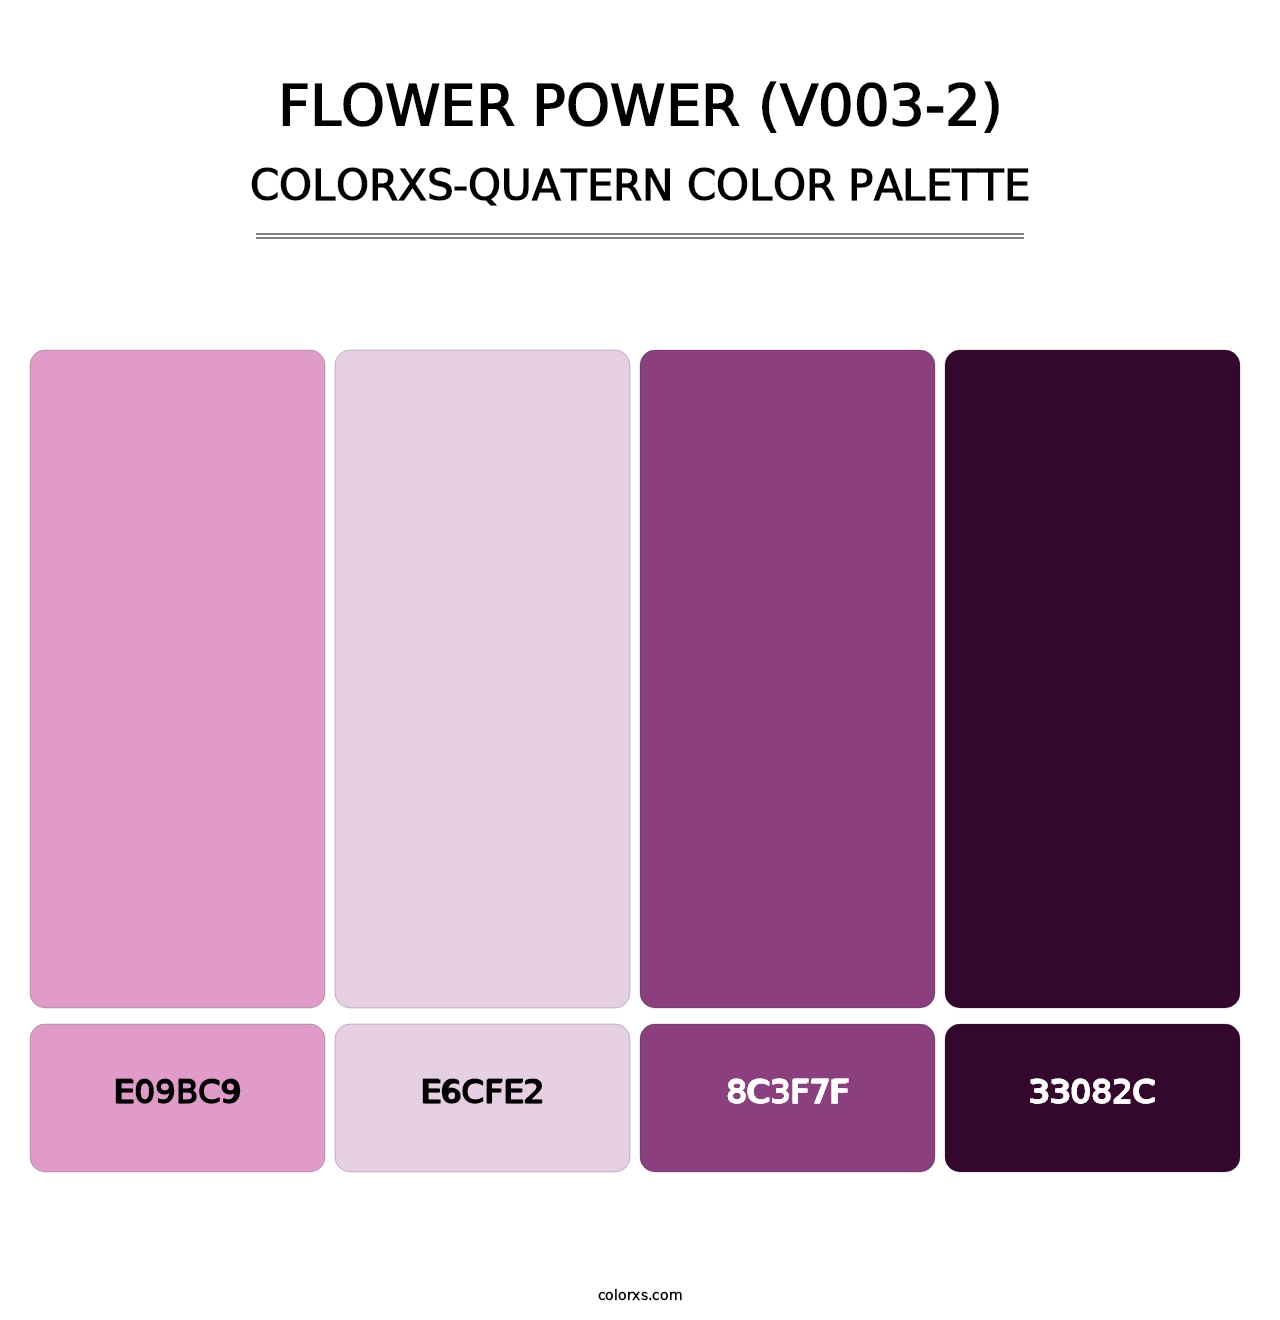 Flower Power (V003-2) - Colorxs Quatern Palette